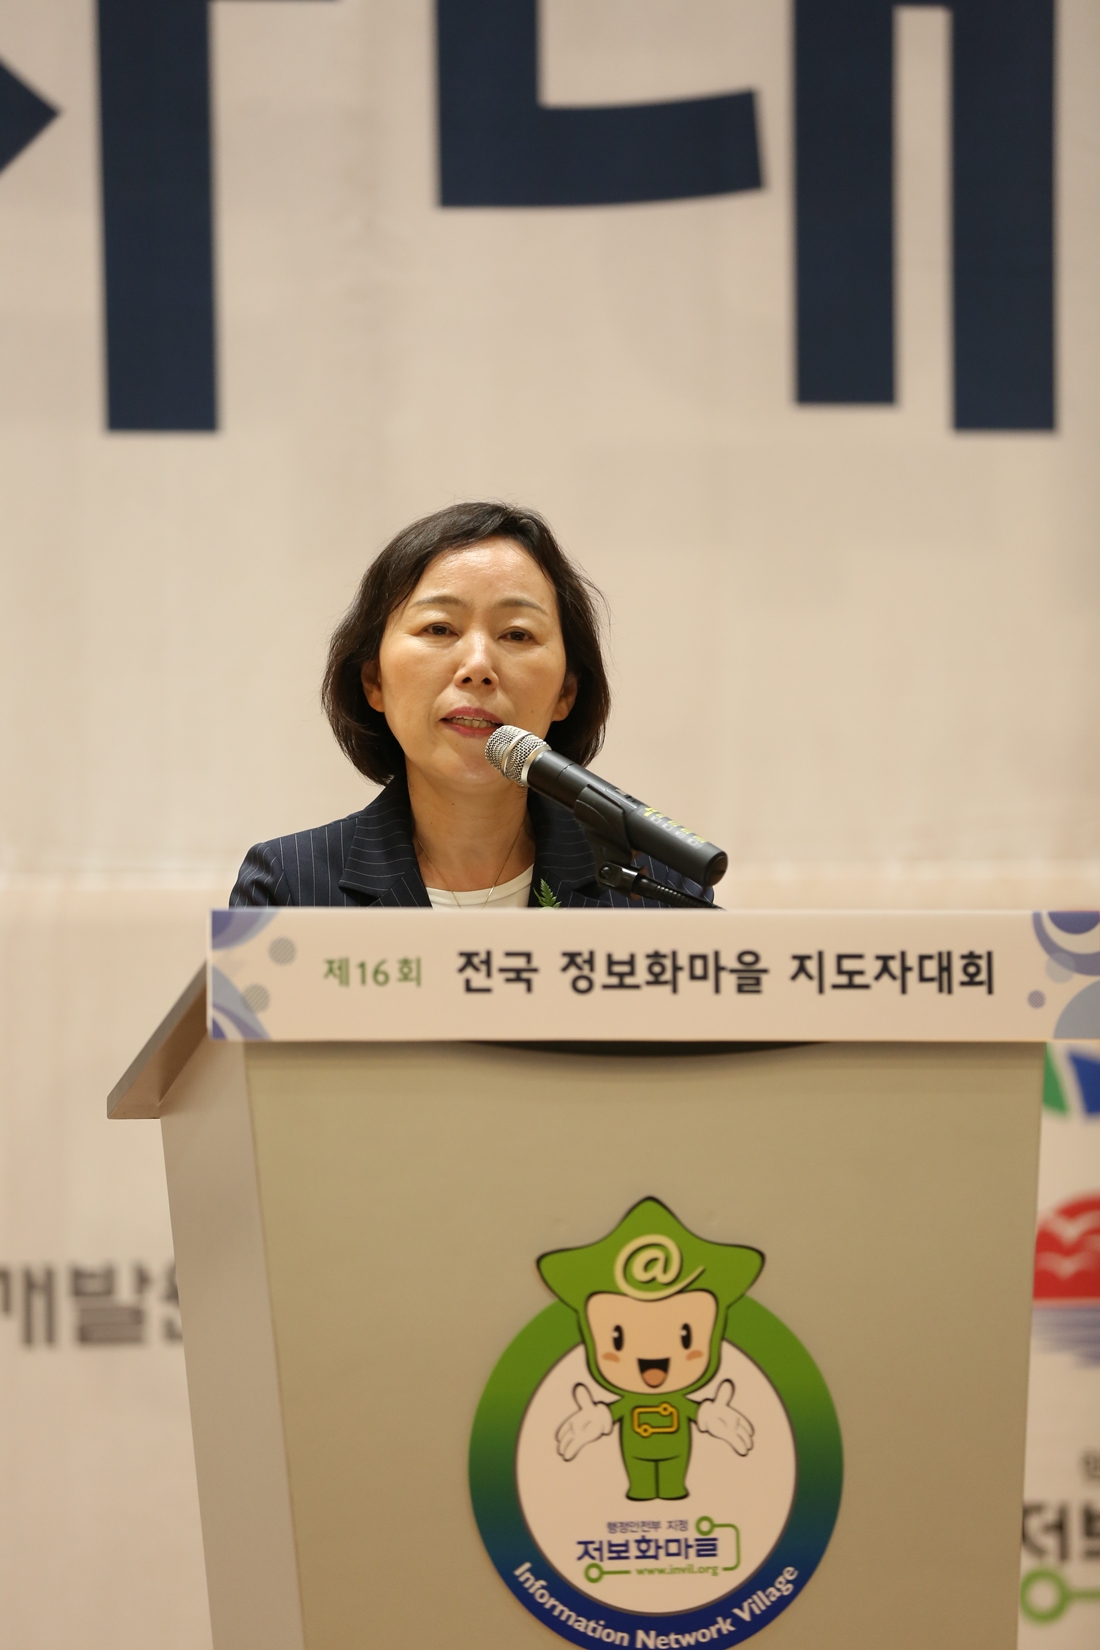 4일 경상남도 거제시에서 열린「제16회 전국 정보화마을 지도자대회」에서 김혜영 정보기반보호정책관이 개회사를 하고 있다.